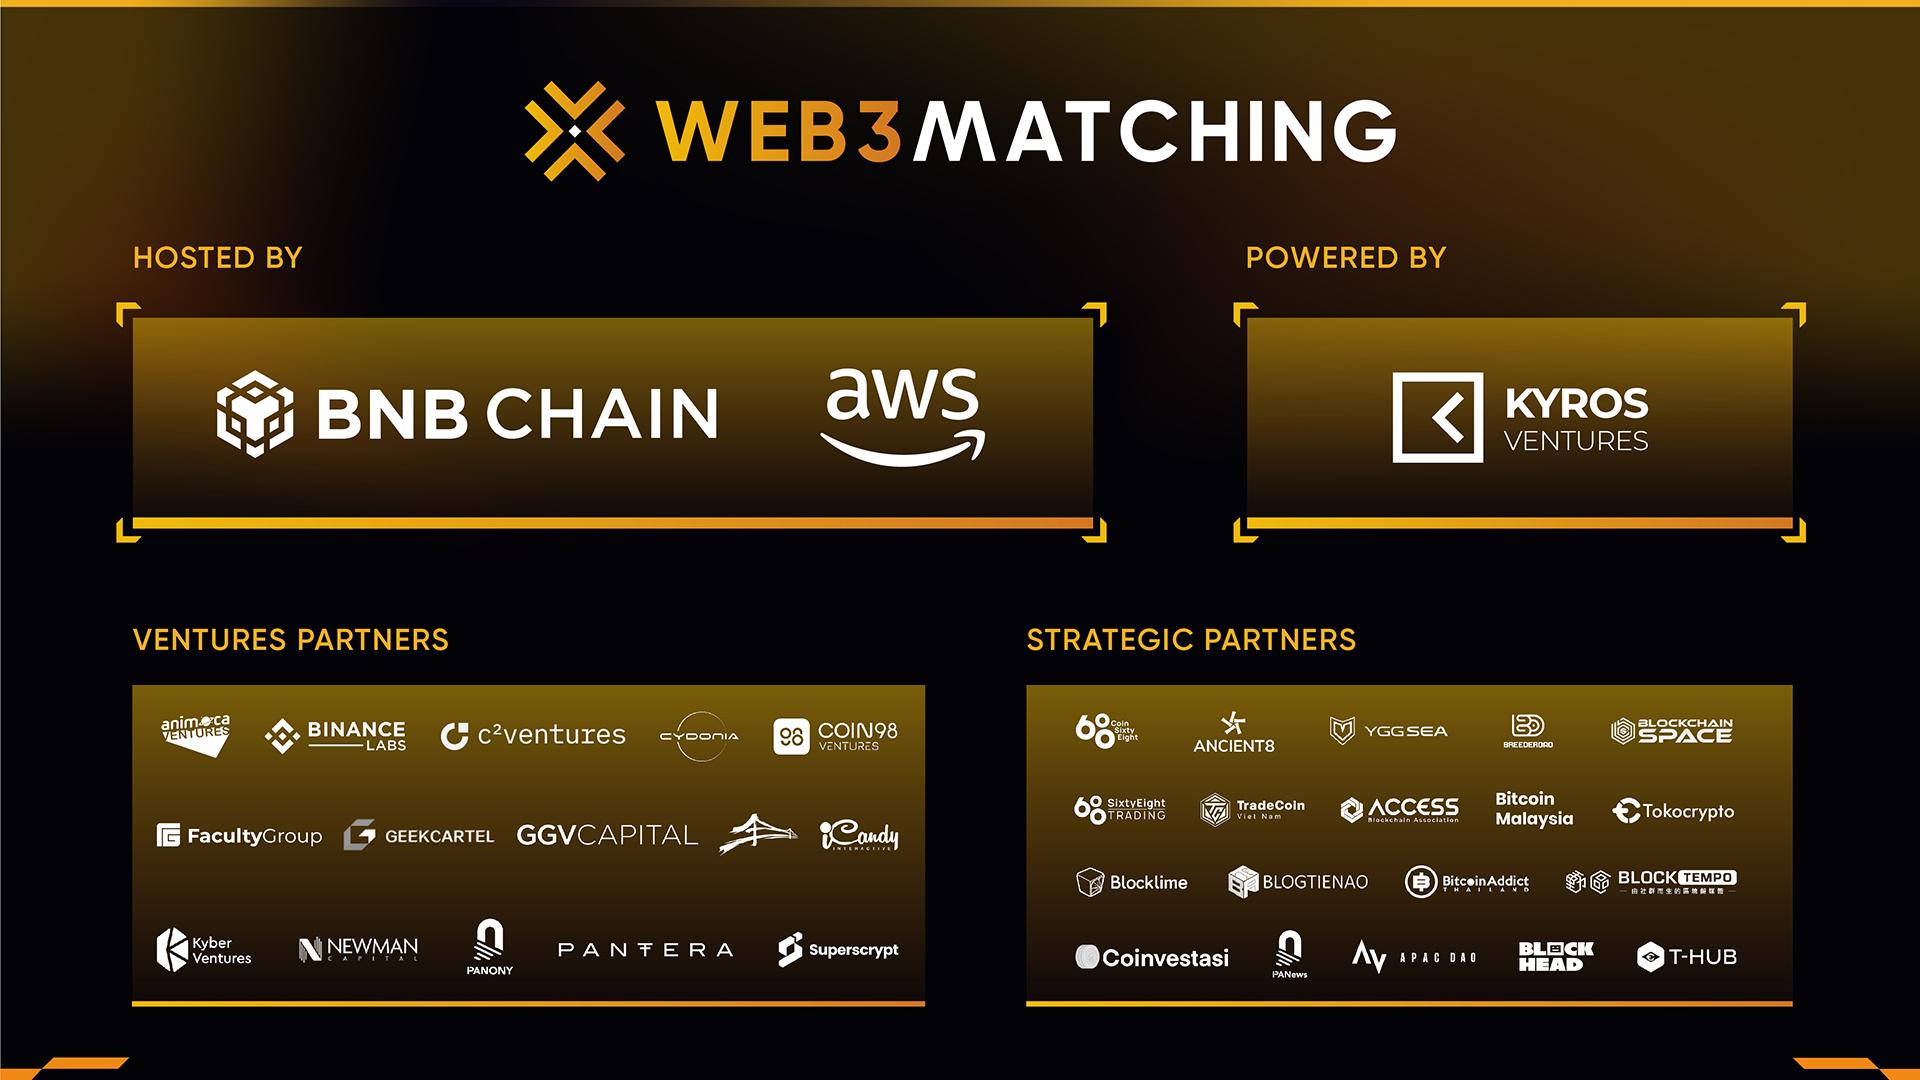 东南亚投资创业盛会Web3 Matching即将举行，AWS、BNB Chain、Kyros Ventures主办